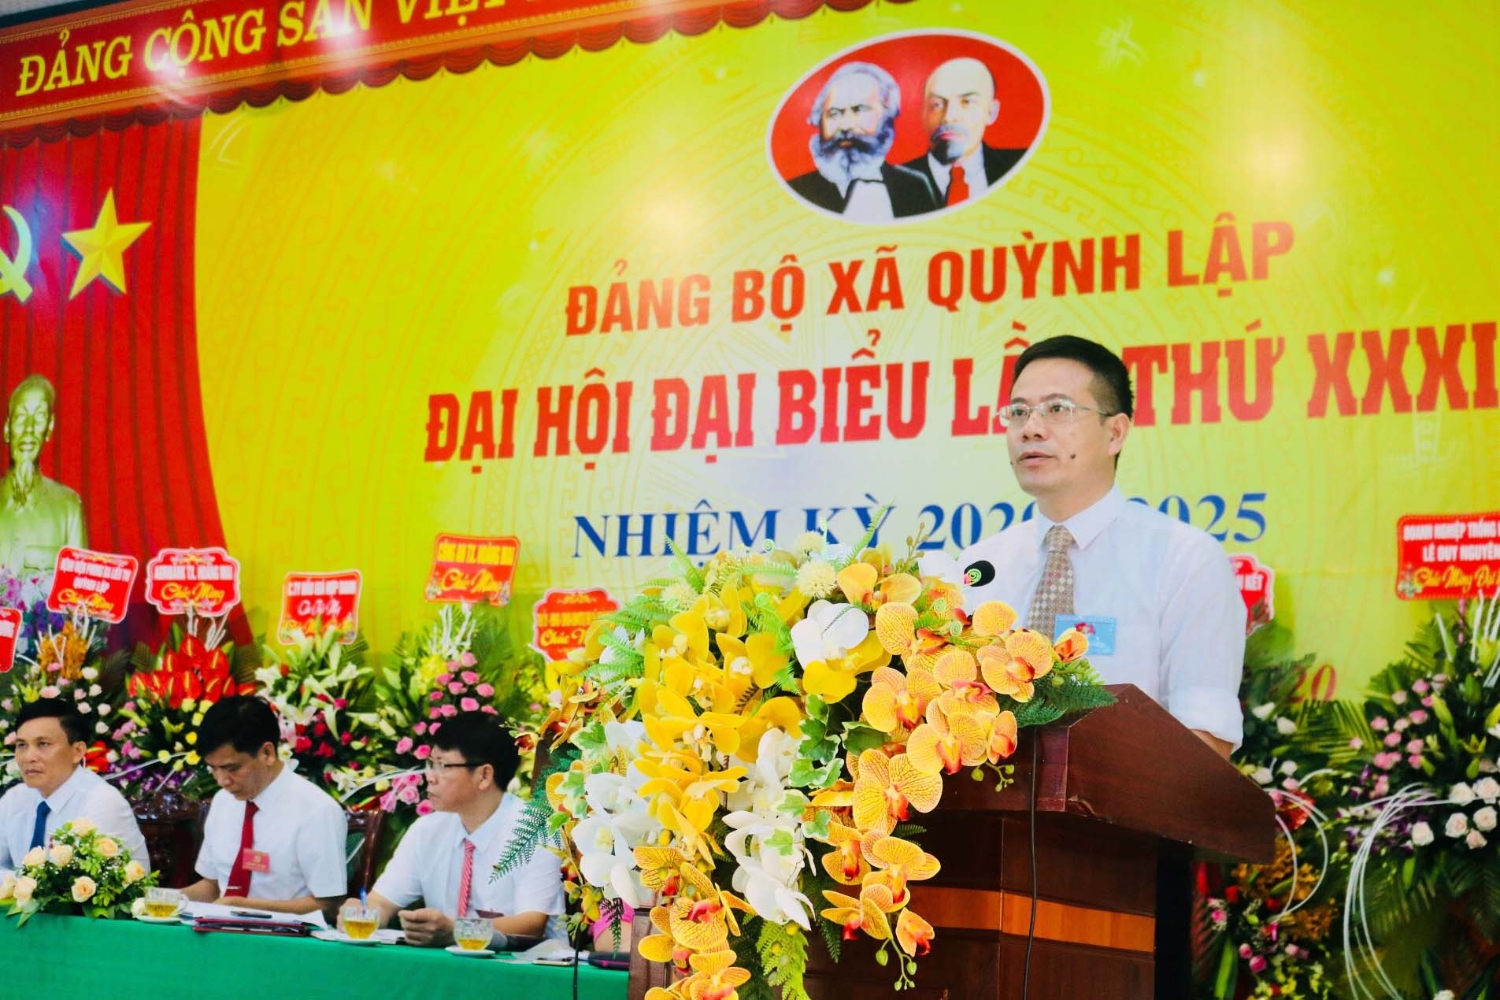 Đồng chí Đàm Hữu Hồng, Phó Bí thư thường trực Thị ủy phát biểu chỉ đạo đại hội